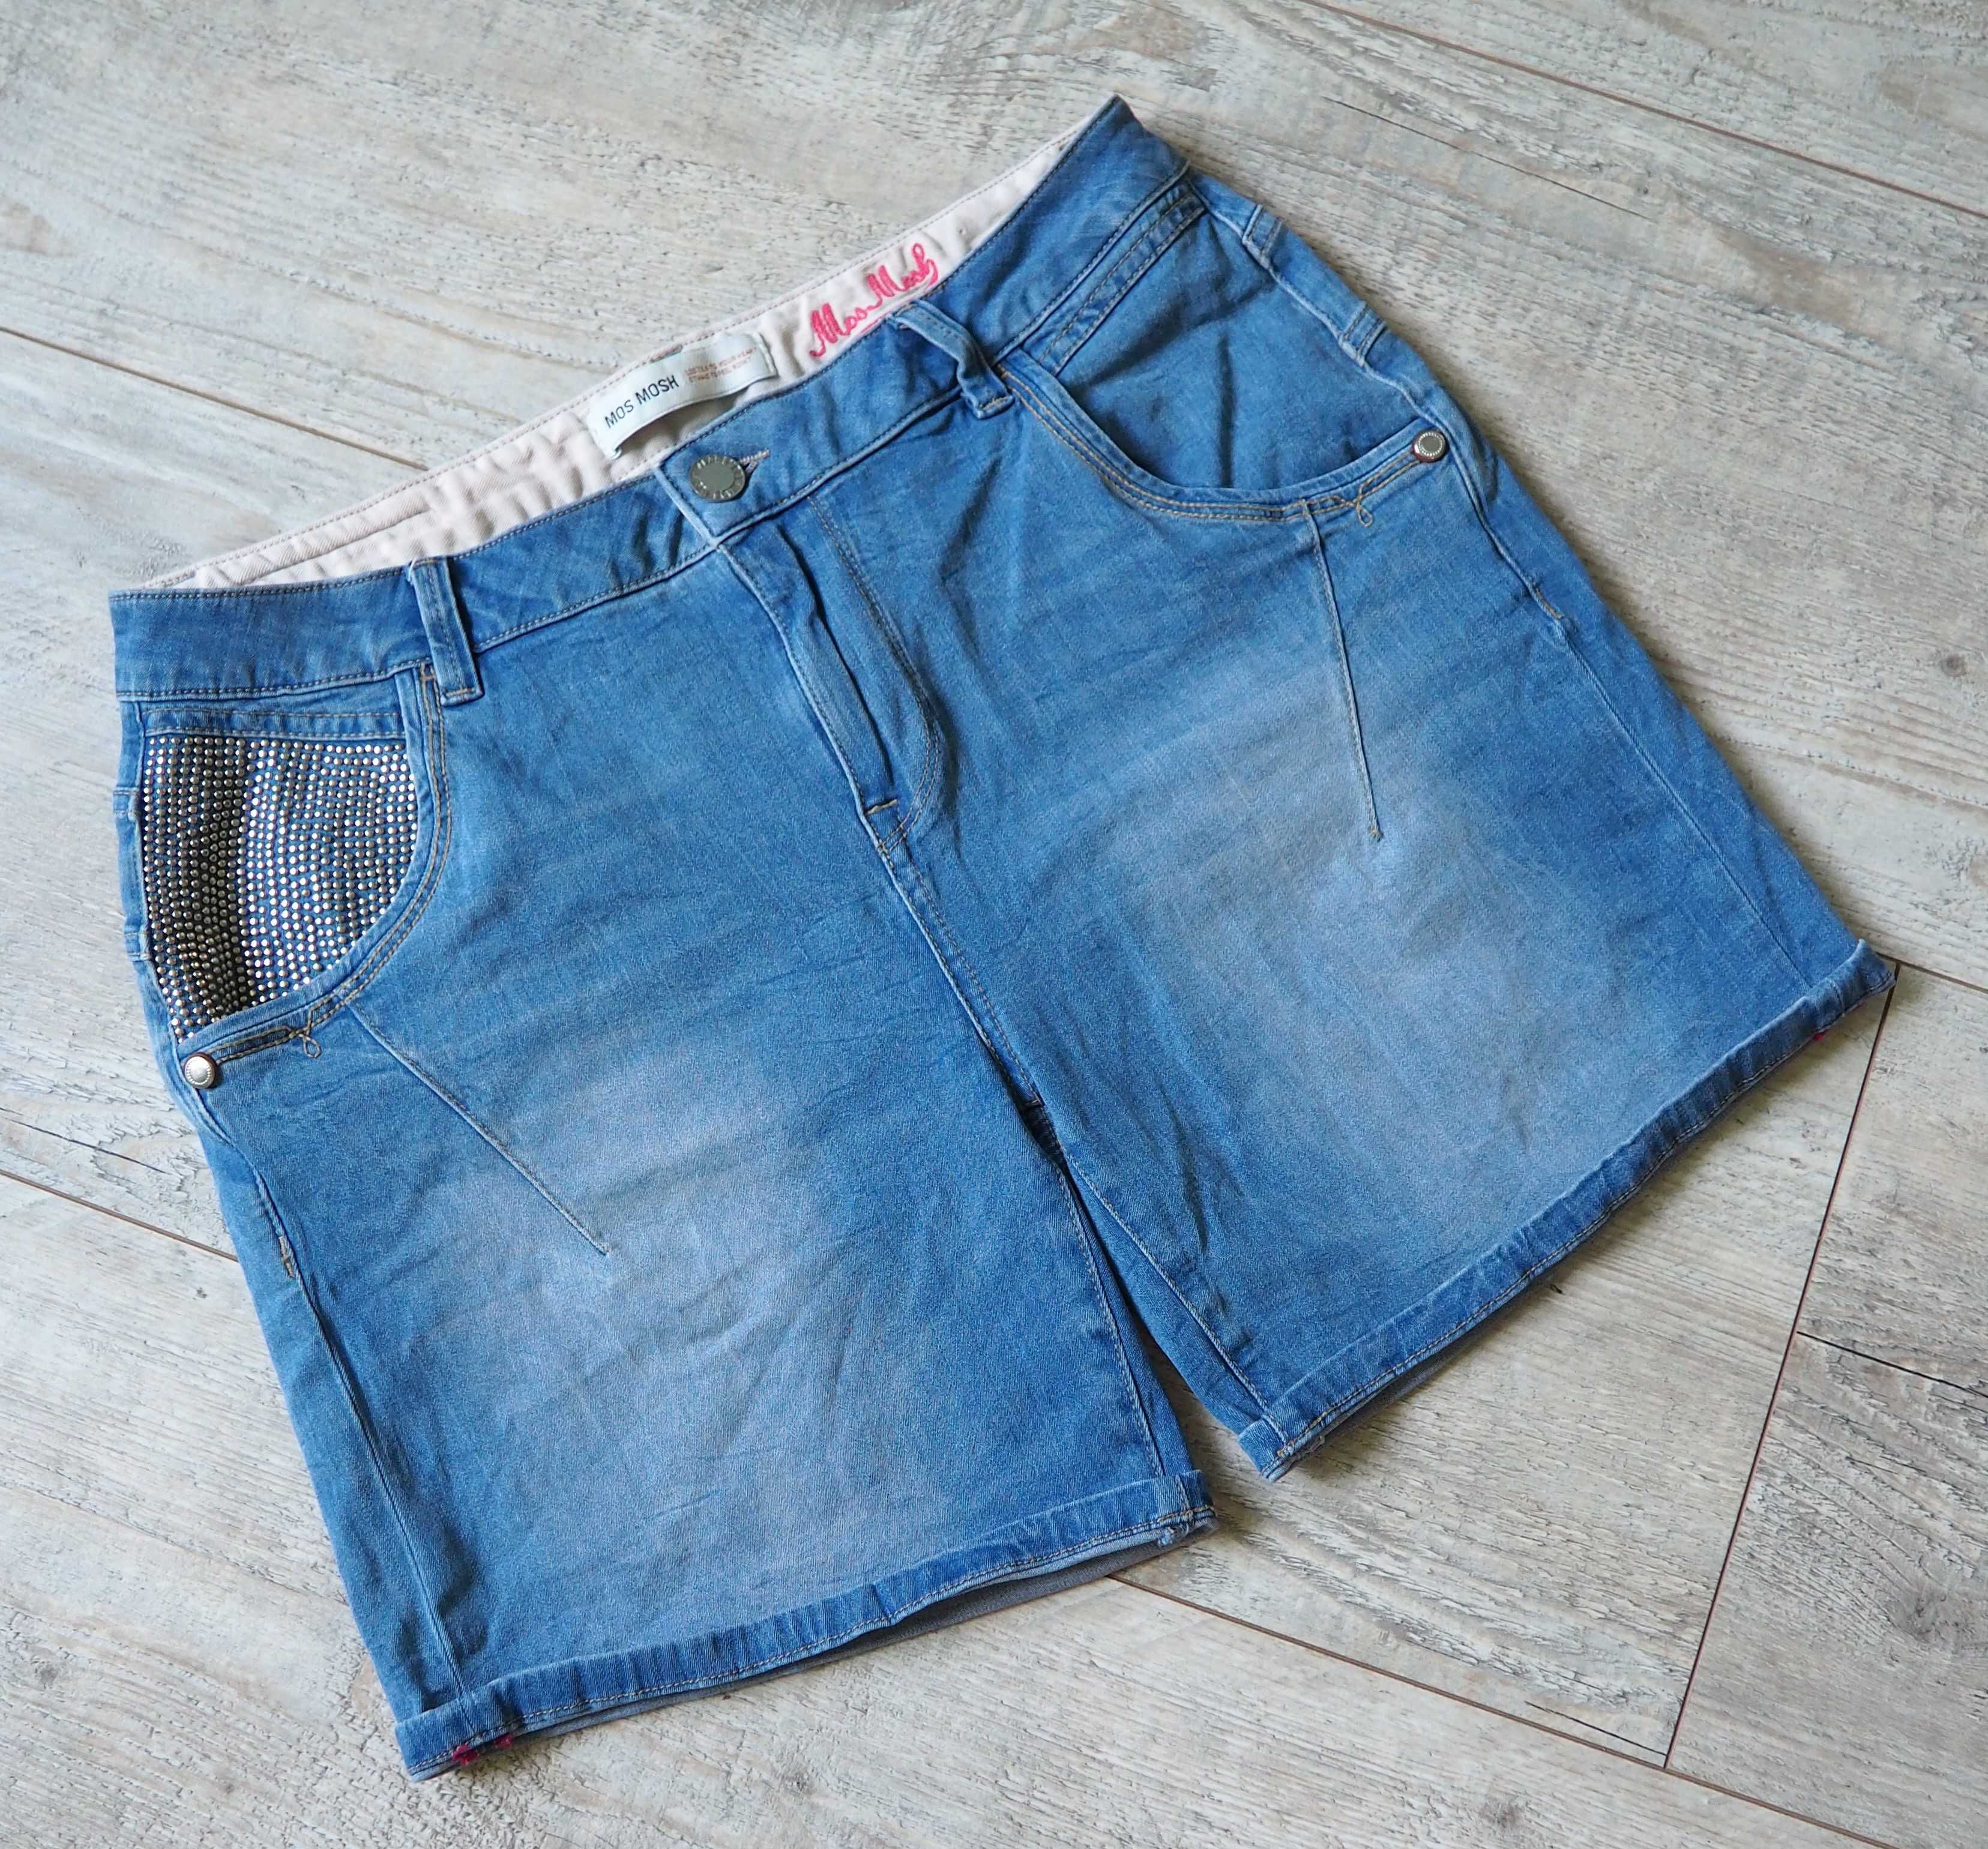 MOS MOSH_Linton Denim Shorts_spodenki damskie jeansowe_rozmiar XL/32